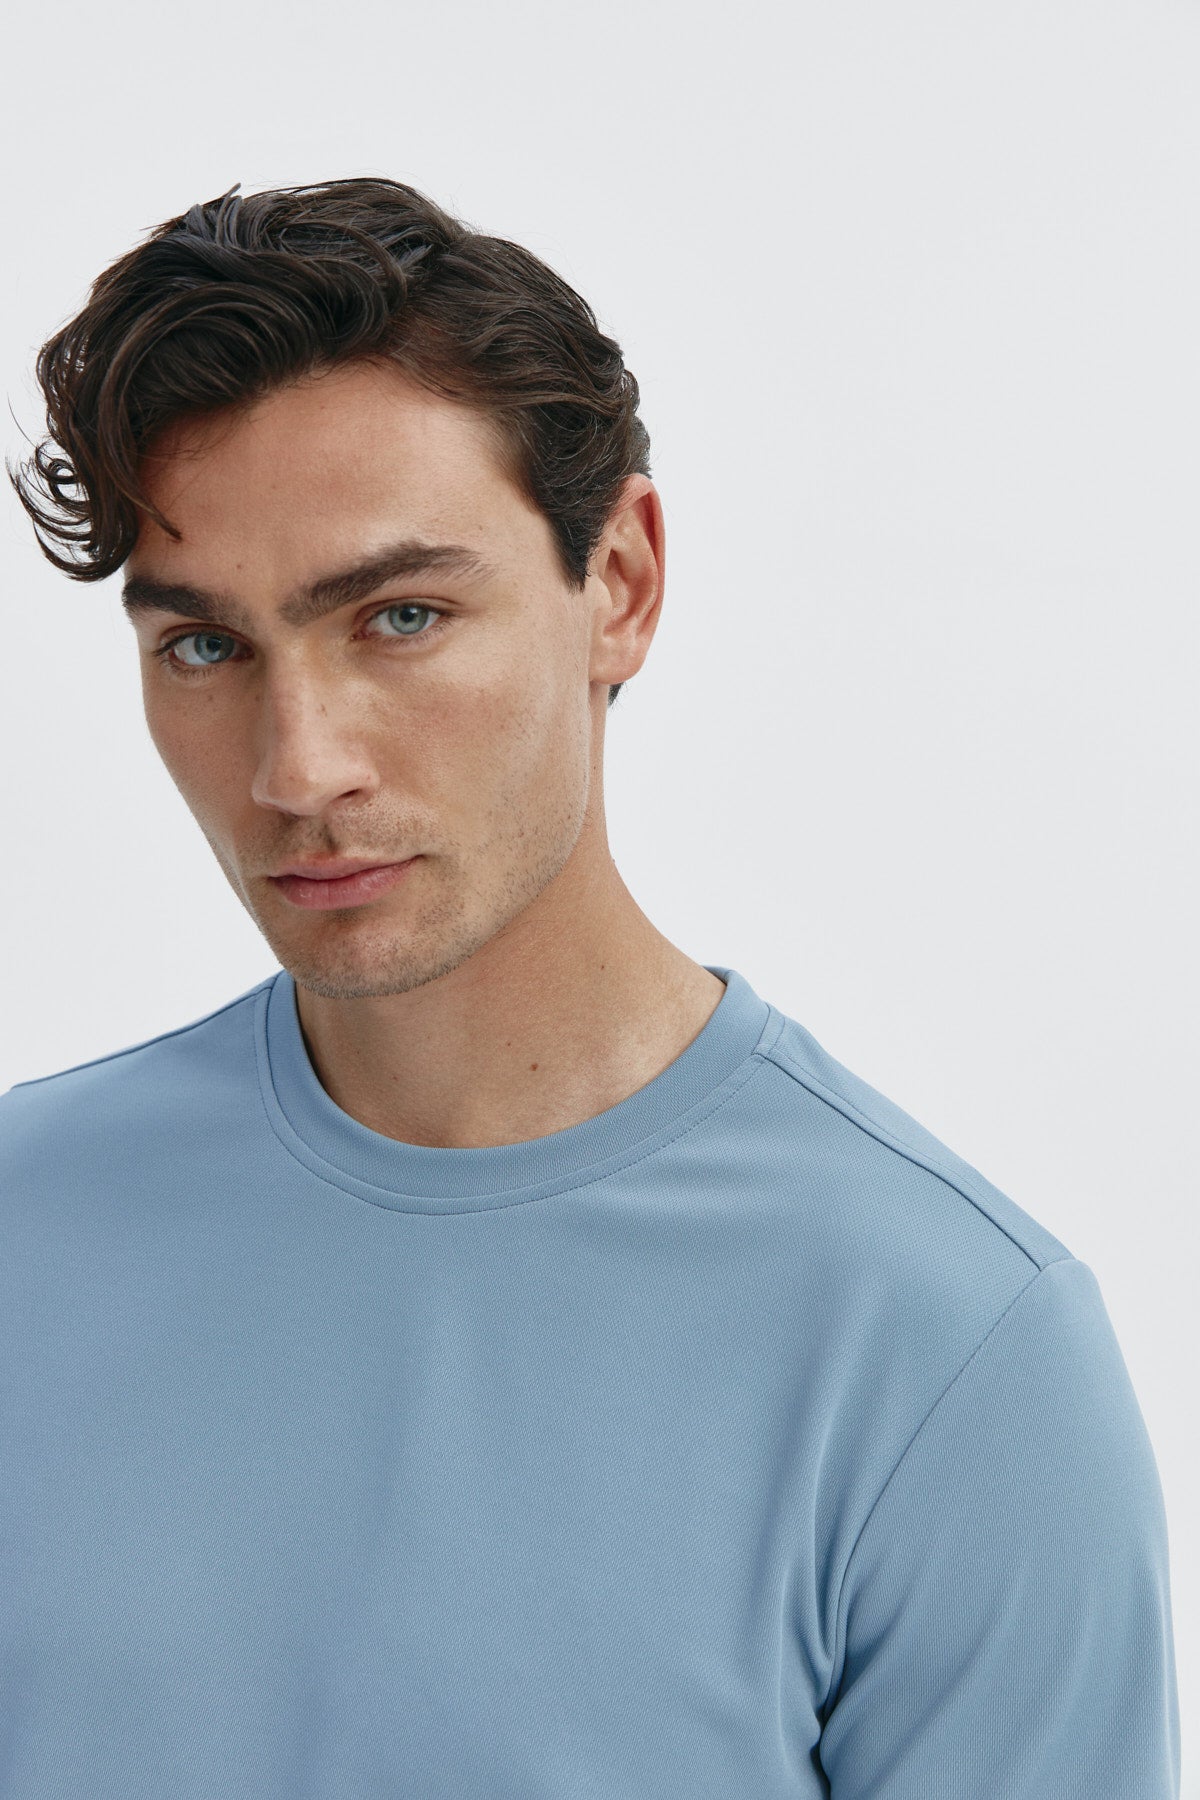 Camiseta de hombre en azul medianoche de Sepiia, estilo y comodidad en una prenda duradera. Foto retrato